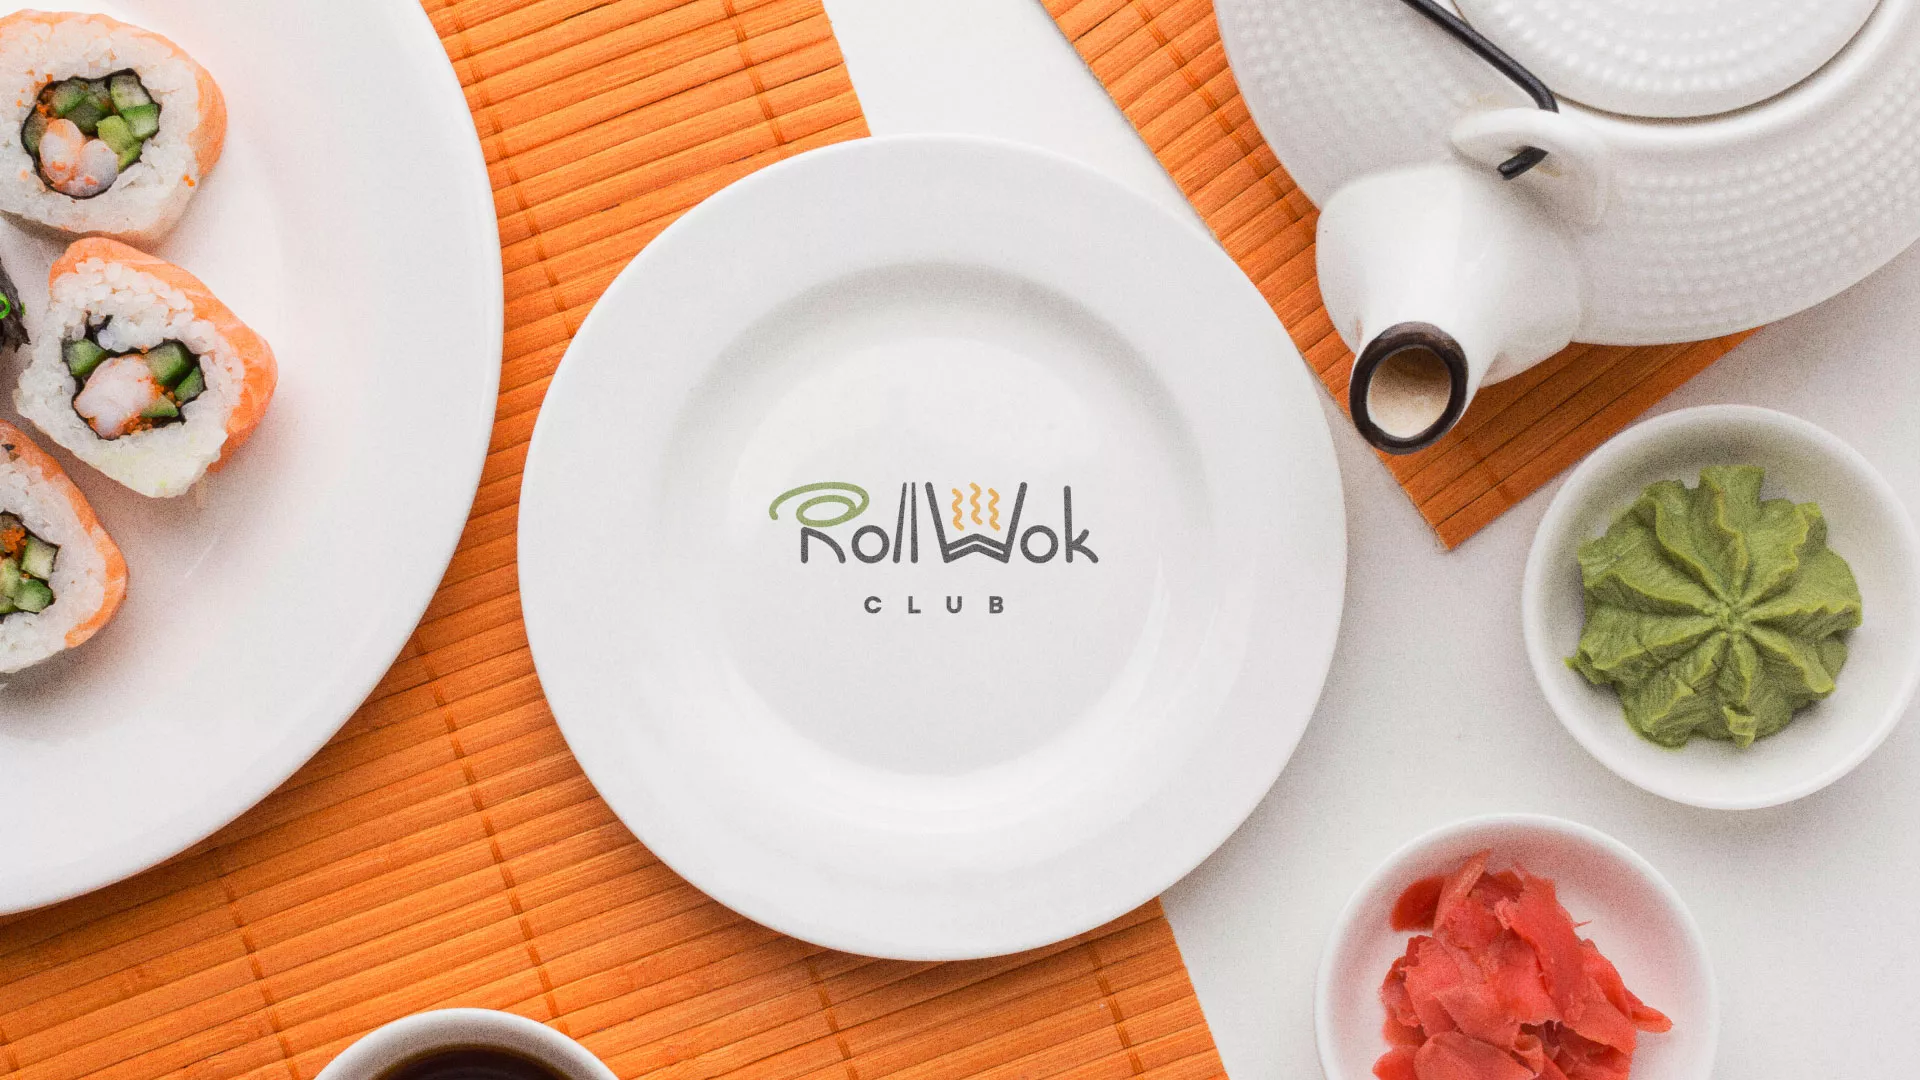 Разработка логотипа и фирменного стиля суши-бара «Roll Wok Club» в Наволоках